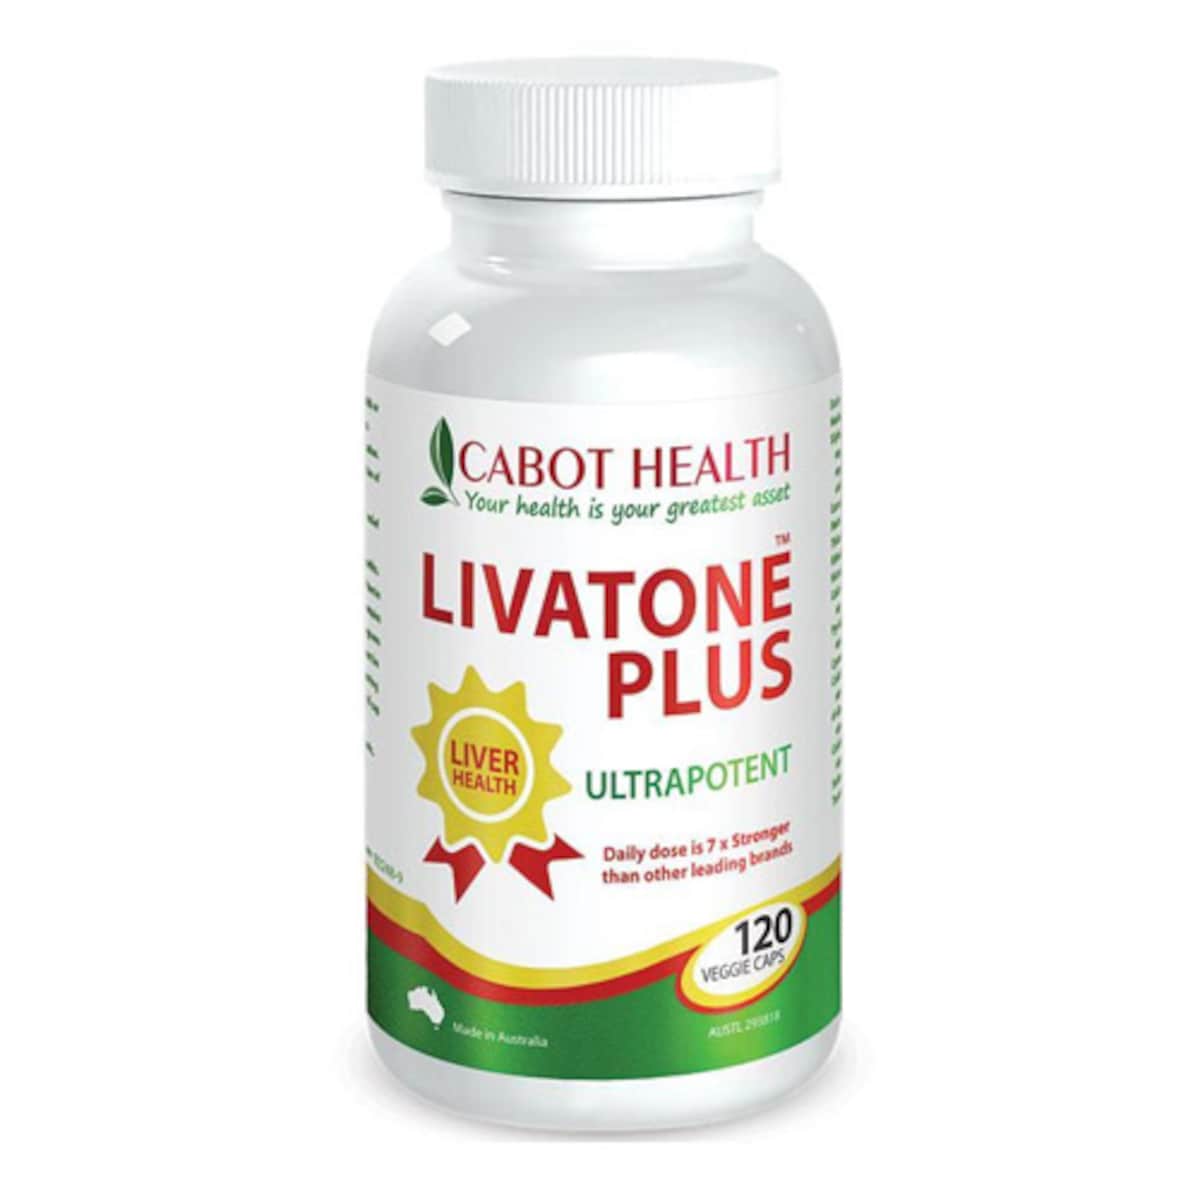 Cabot Health Livatone Plus Turmeric 120 Capsules Australia